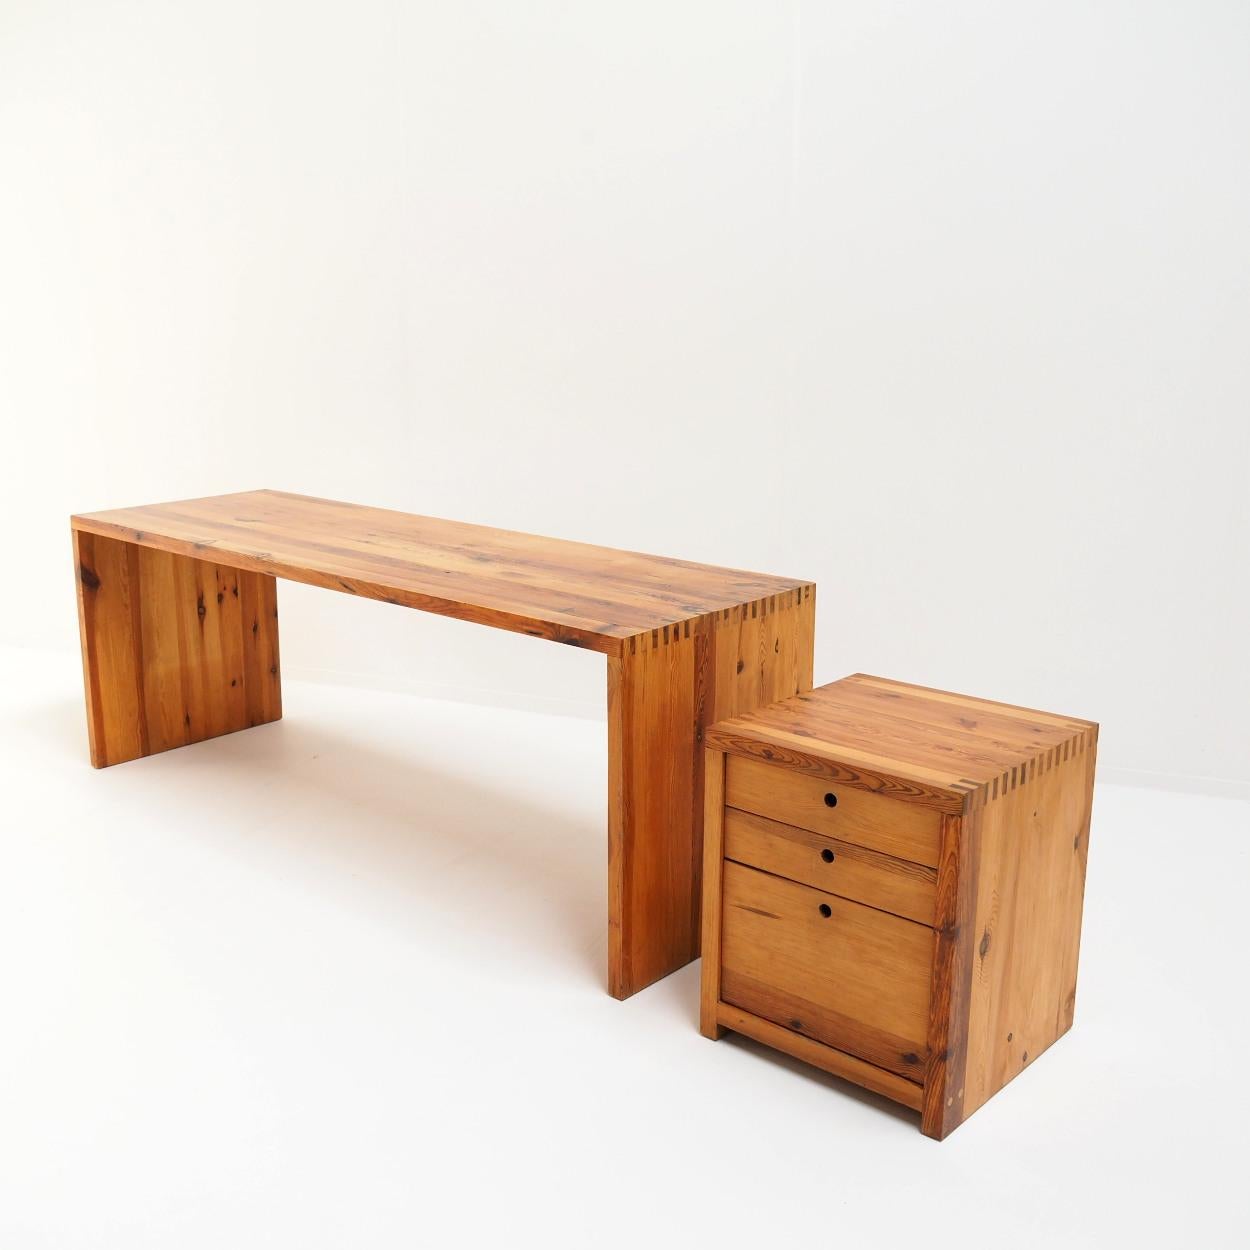 Schreibtisch mit Schubladenelement, entworfen von der niederländischen Designerin Ate van Apeldoorn für Houtwerk Hattem.

Ate van Apeldoorn entwarf in einem minimalistischen Stil, der an die Entwürfe von Charlotte Perriand, Pierre Chapo etc.